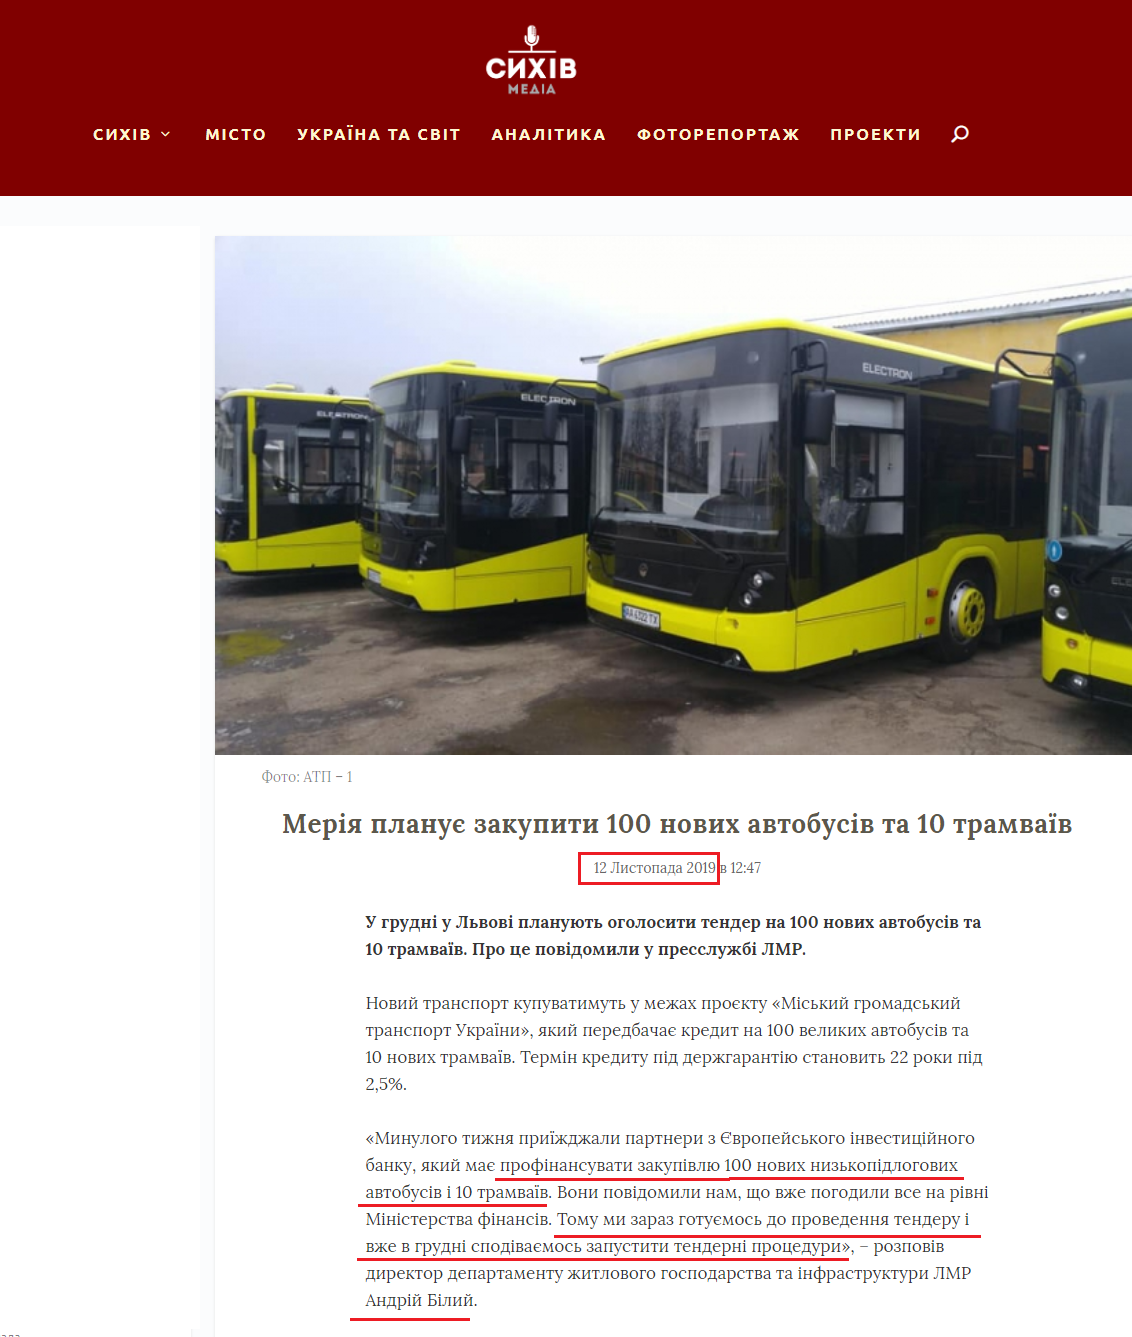 http://sykhiv.media/metiya-planye-100-njvyh-avtobusiv-ta-10-tramvayiv/